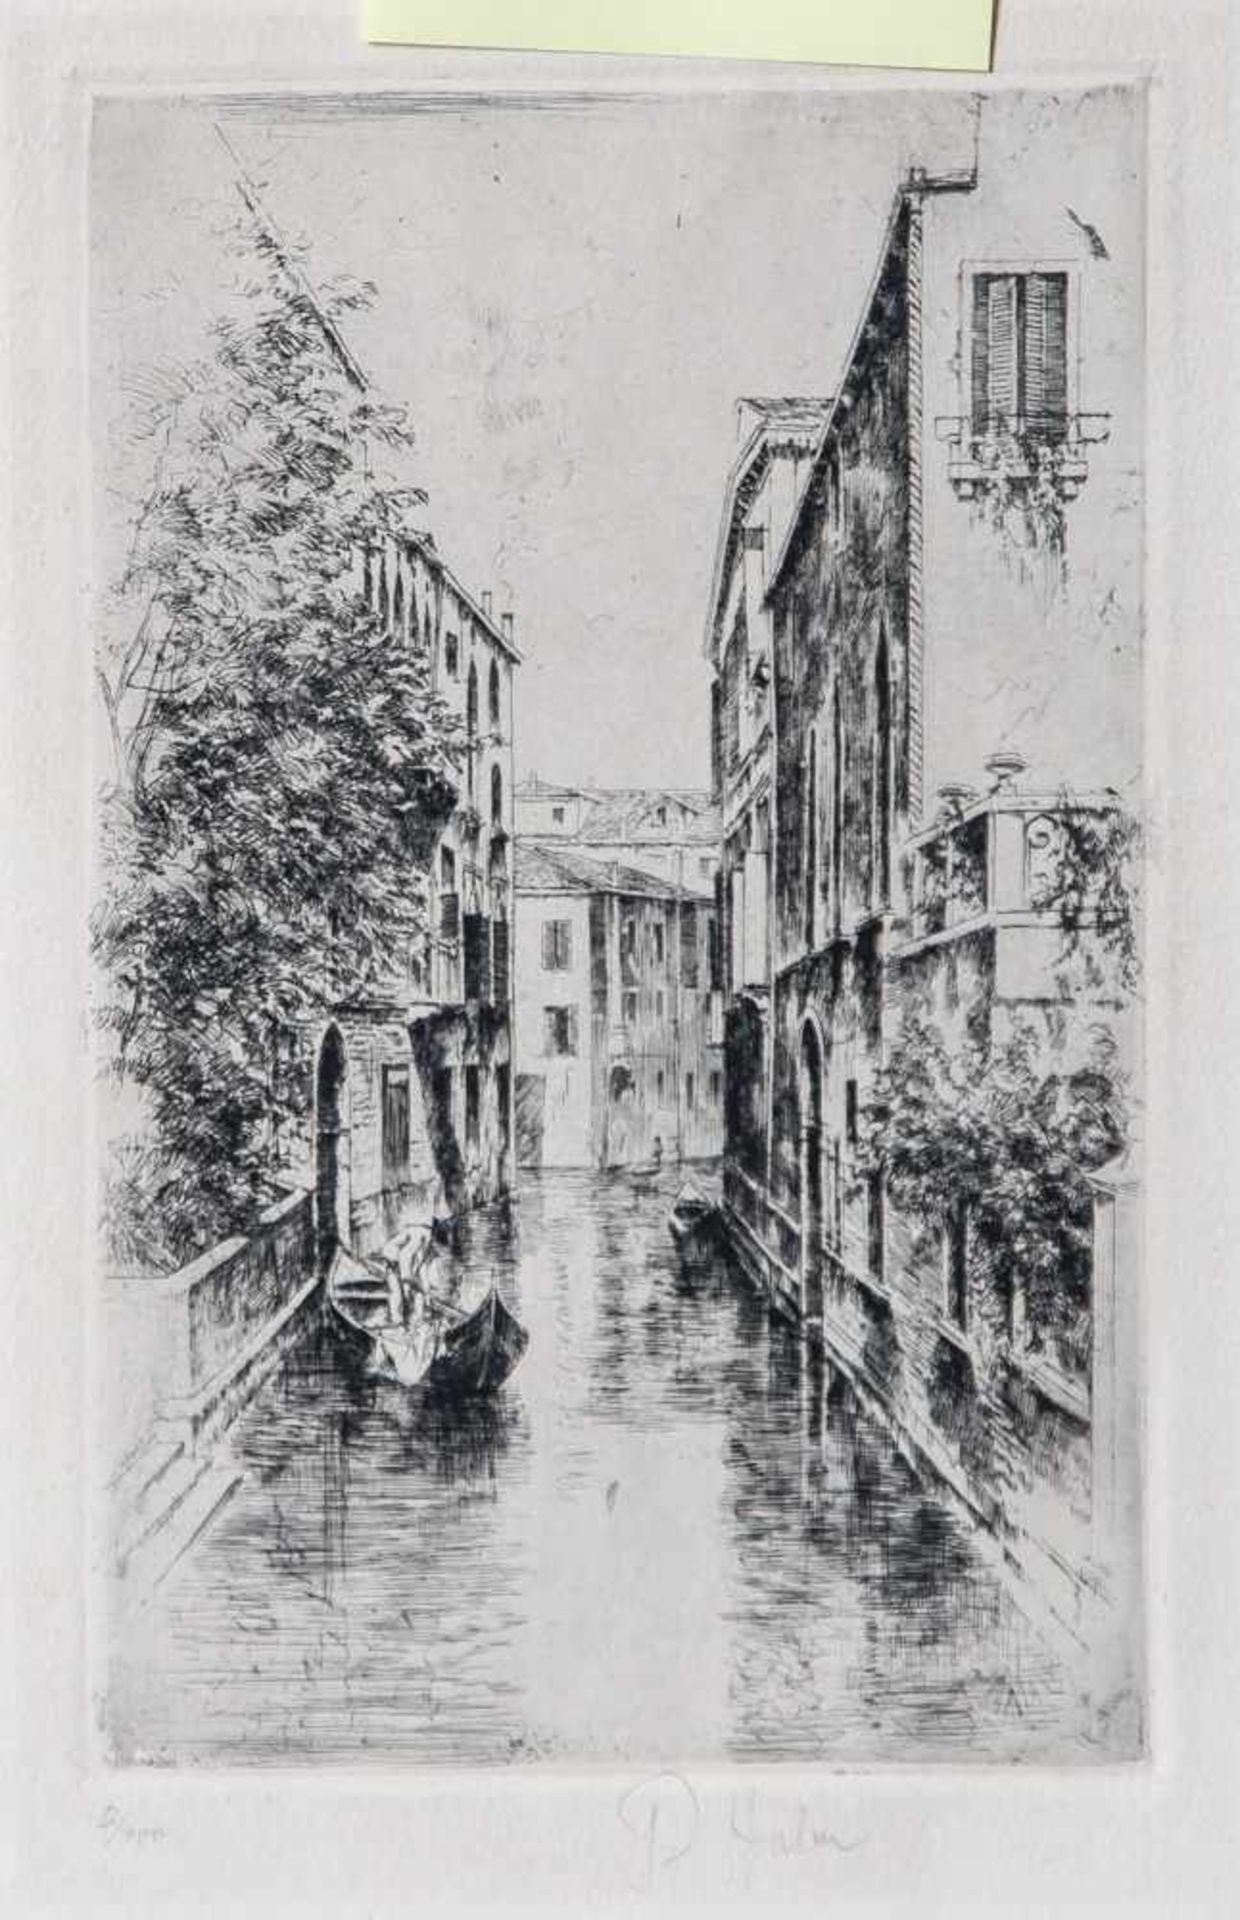 Halm, Peter von (1854-1923), Ansicht in Venedig, Blick auf eine von Gondeln befahrene